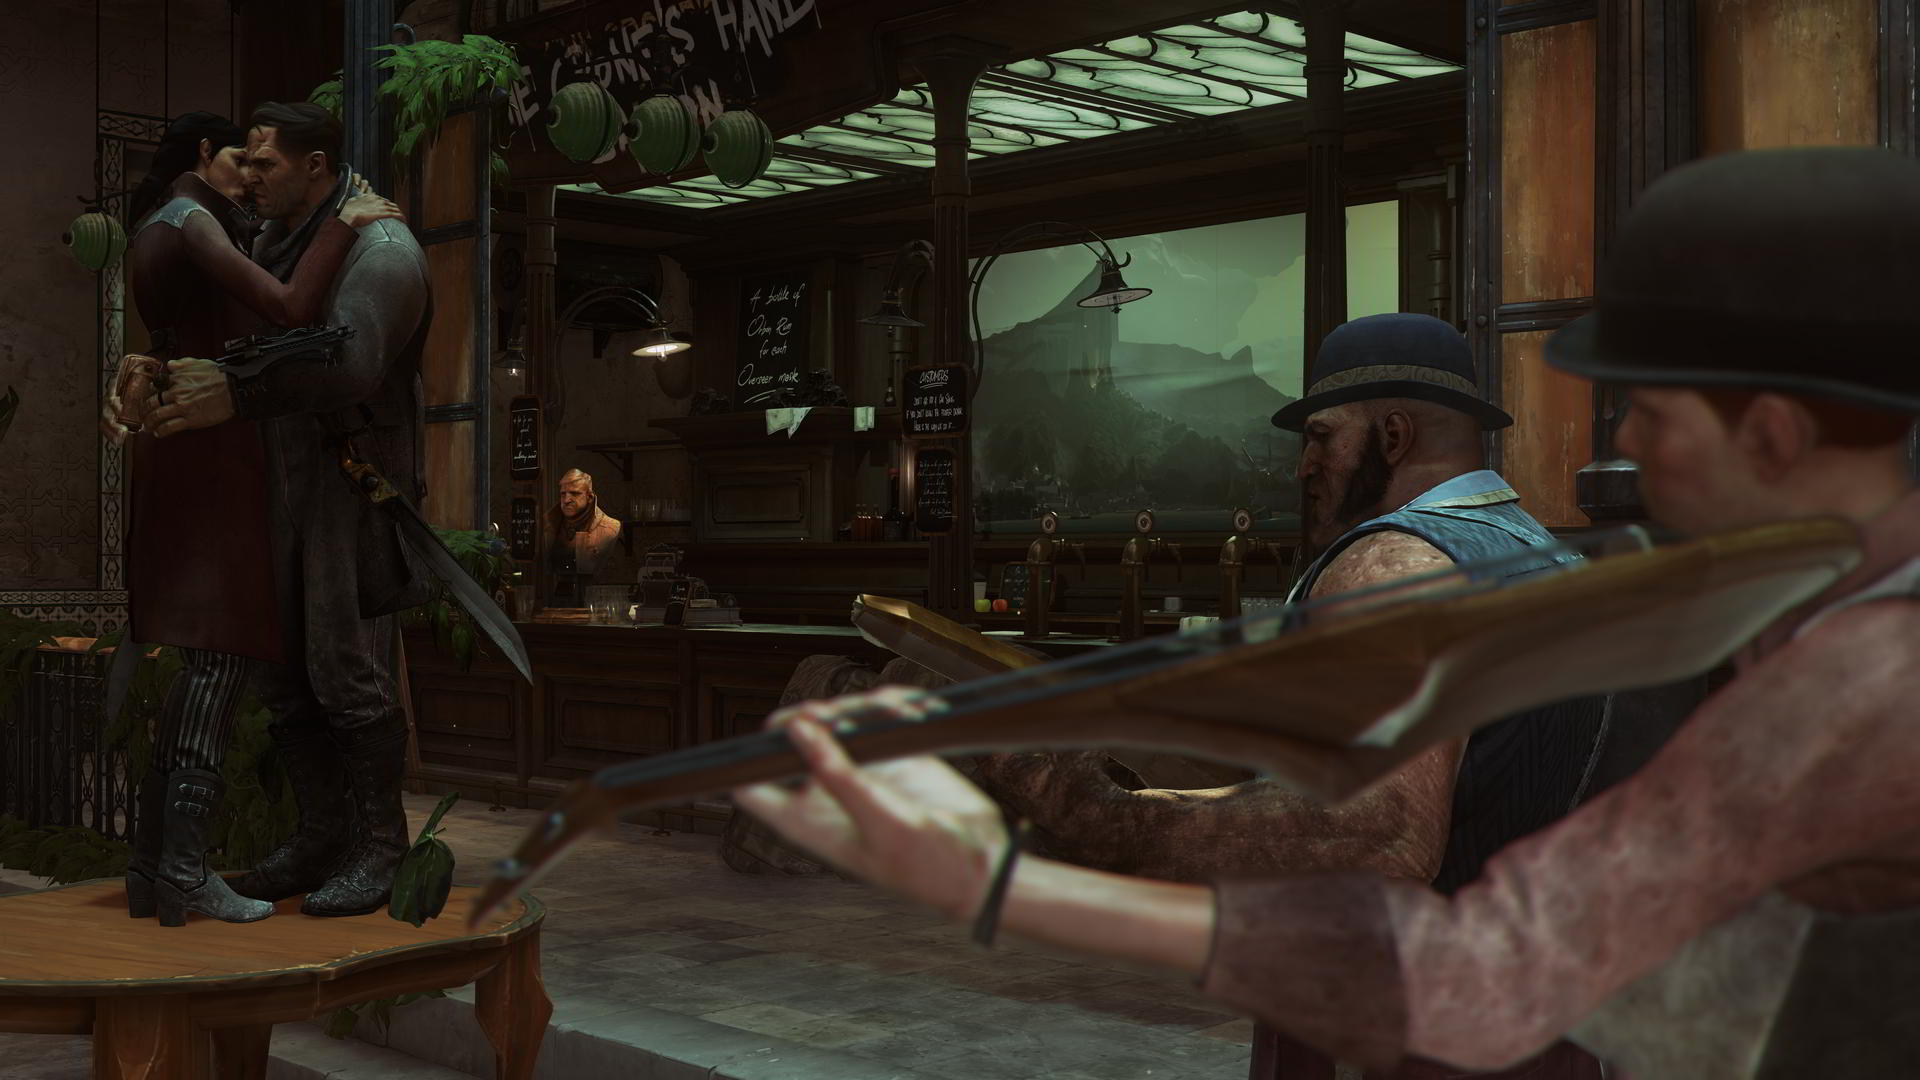 Immagine pubblicata in relazione al seguente contenuto: Bethesda pubblica nuovi screenshots e gameplay trailer Dishonored 2 | Nome immagine: news24801_Dishonored-2-Screenshot_6.jpg